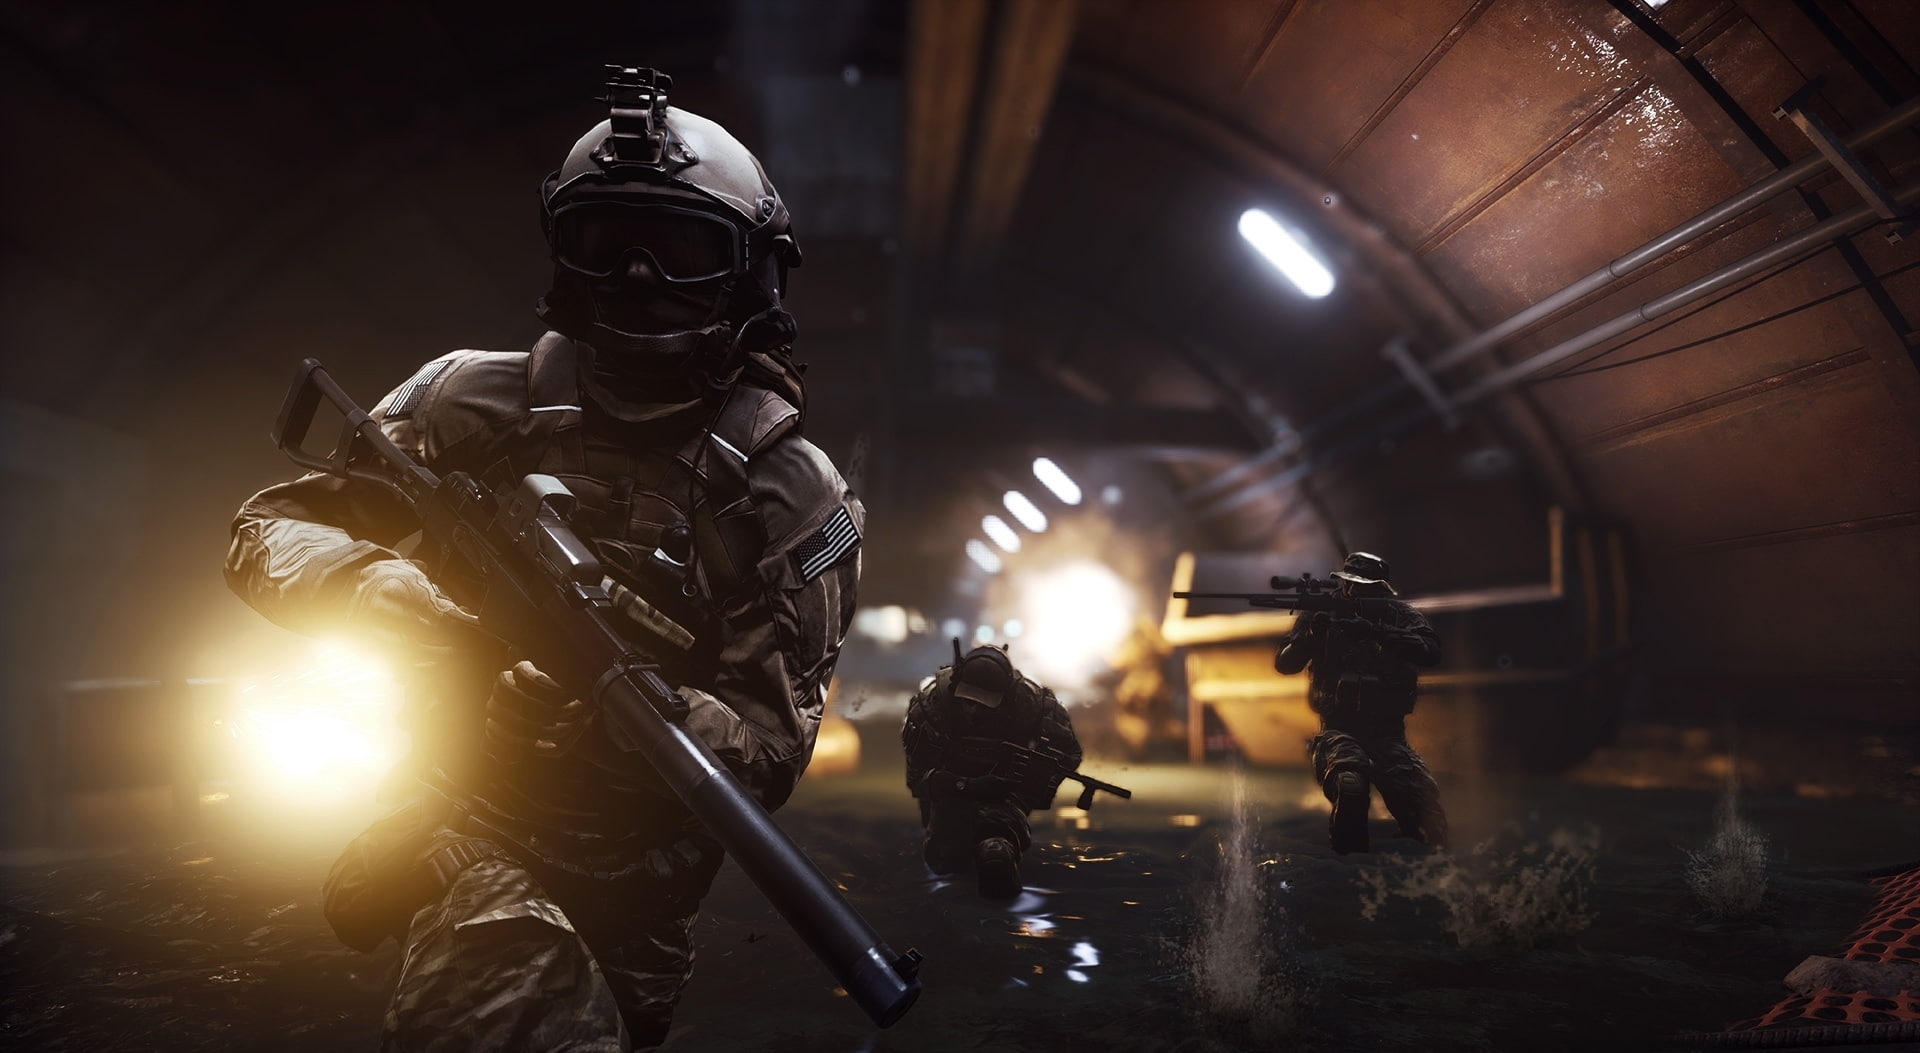 BF4 Second Assault, Battlefield 4 wallpaper, Games, night, illuminated